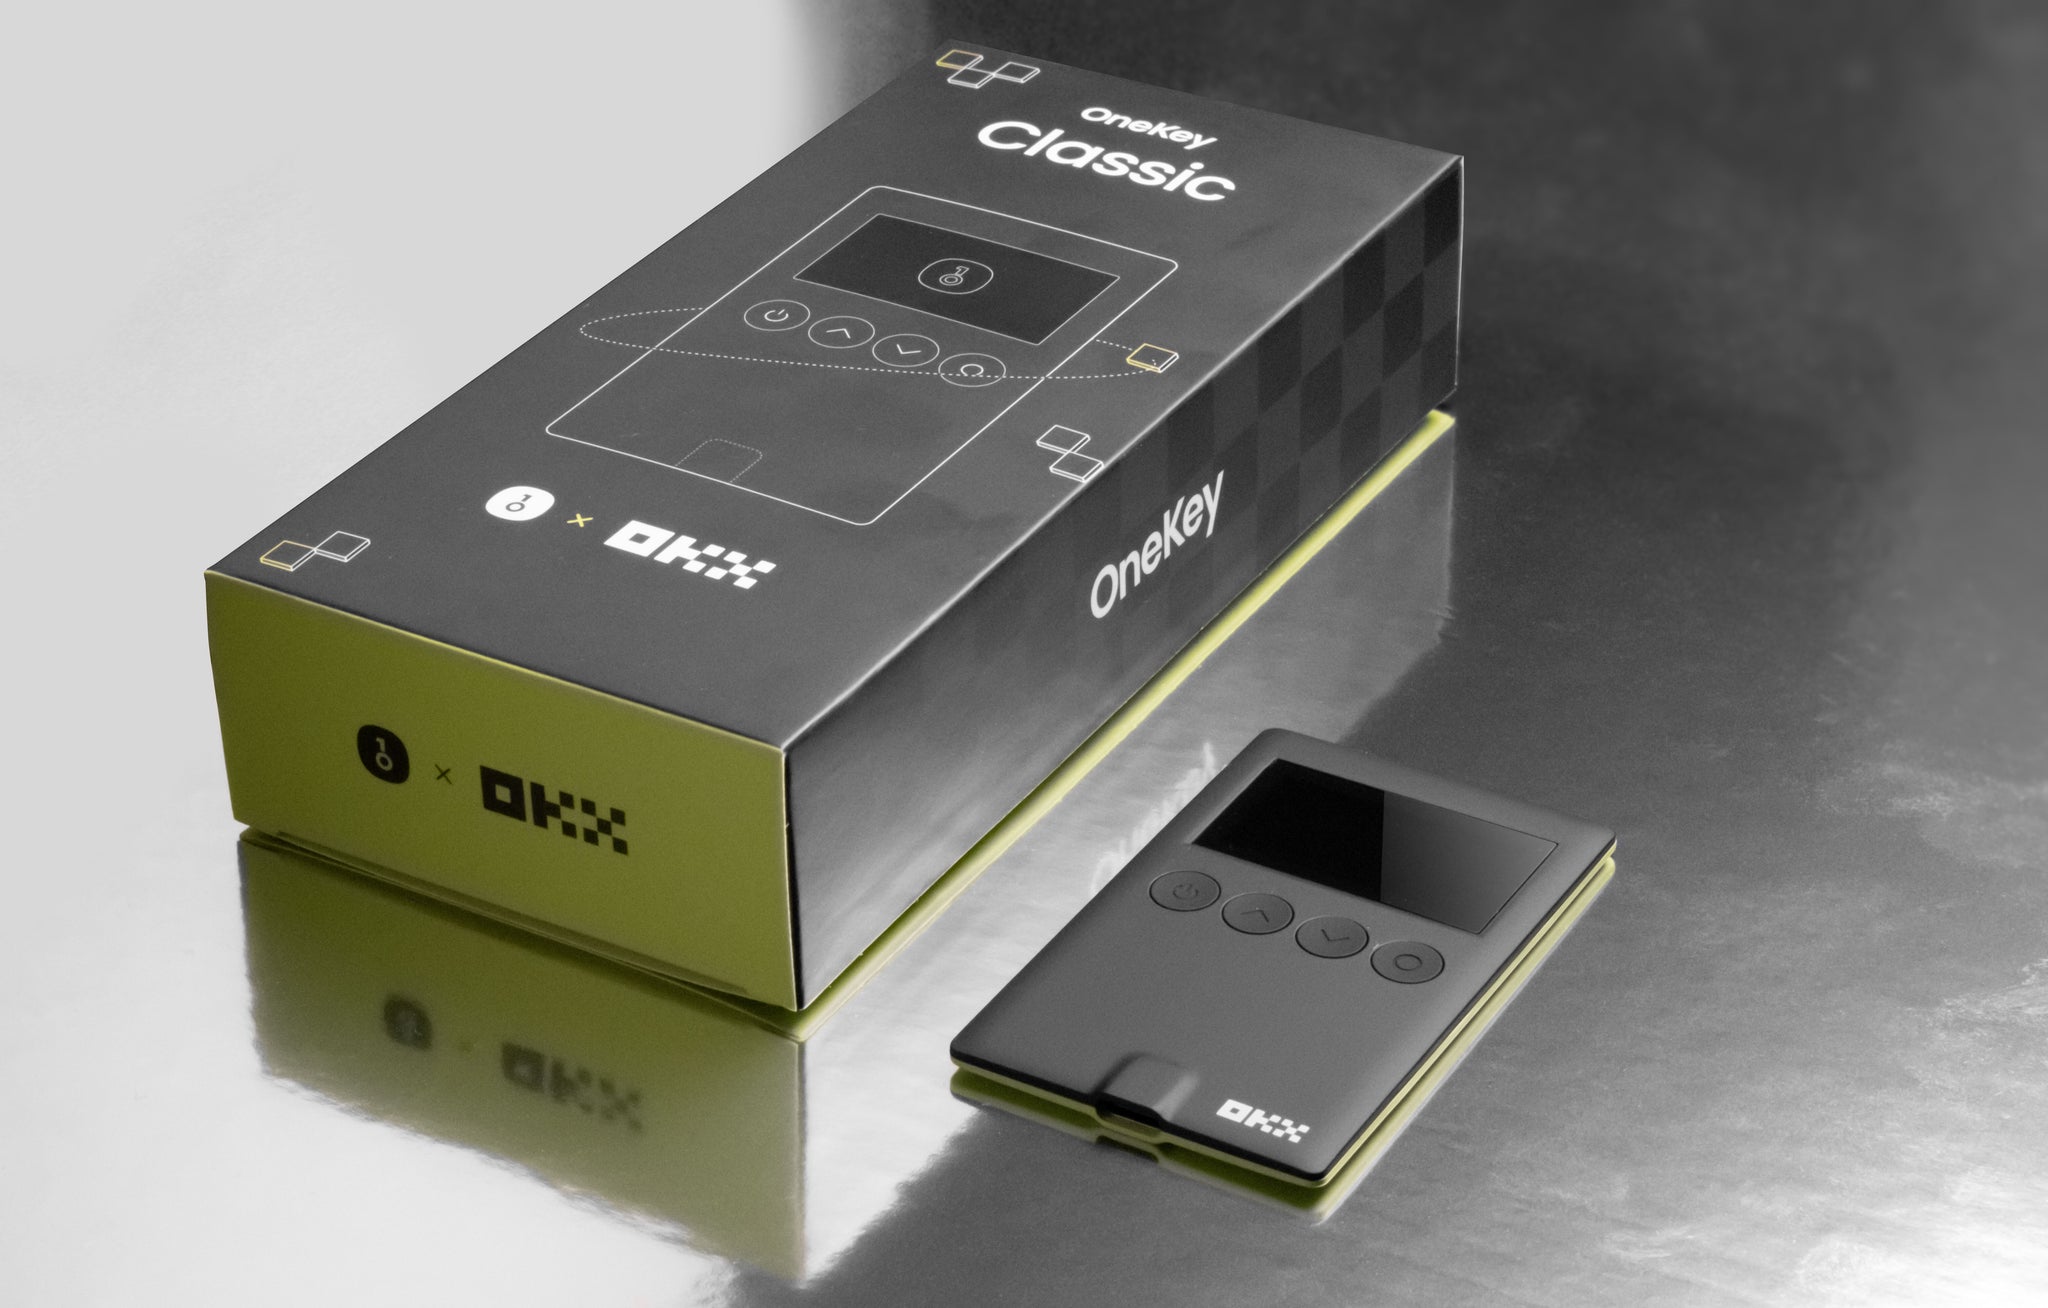 OneKey Classic x OKX - 加密硬件钱包